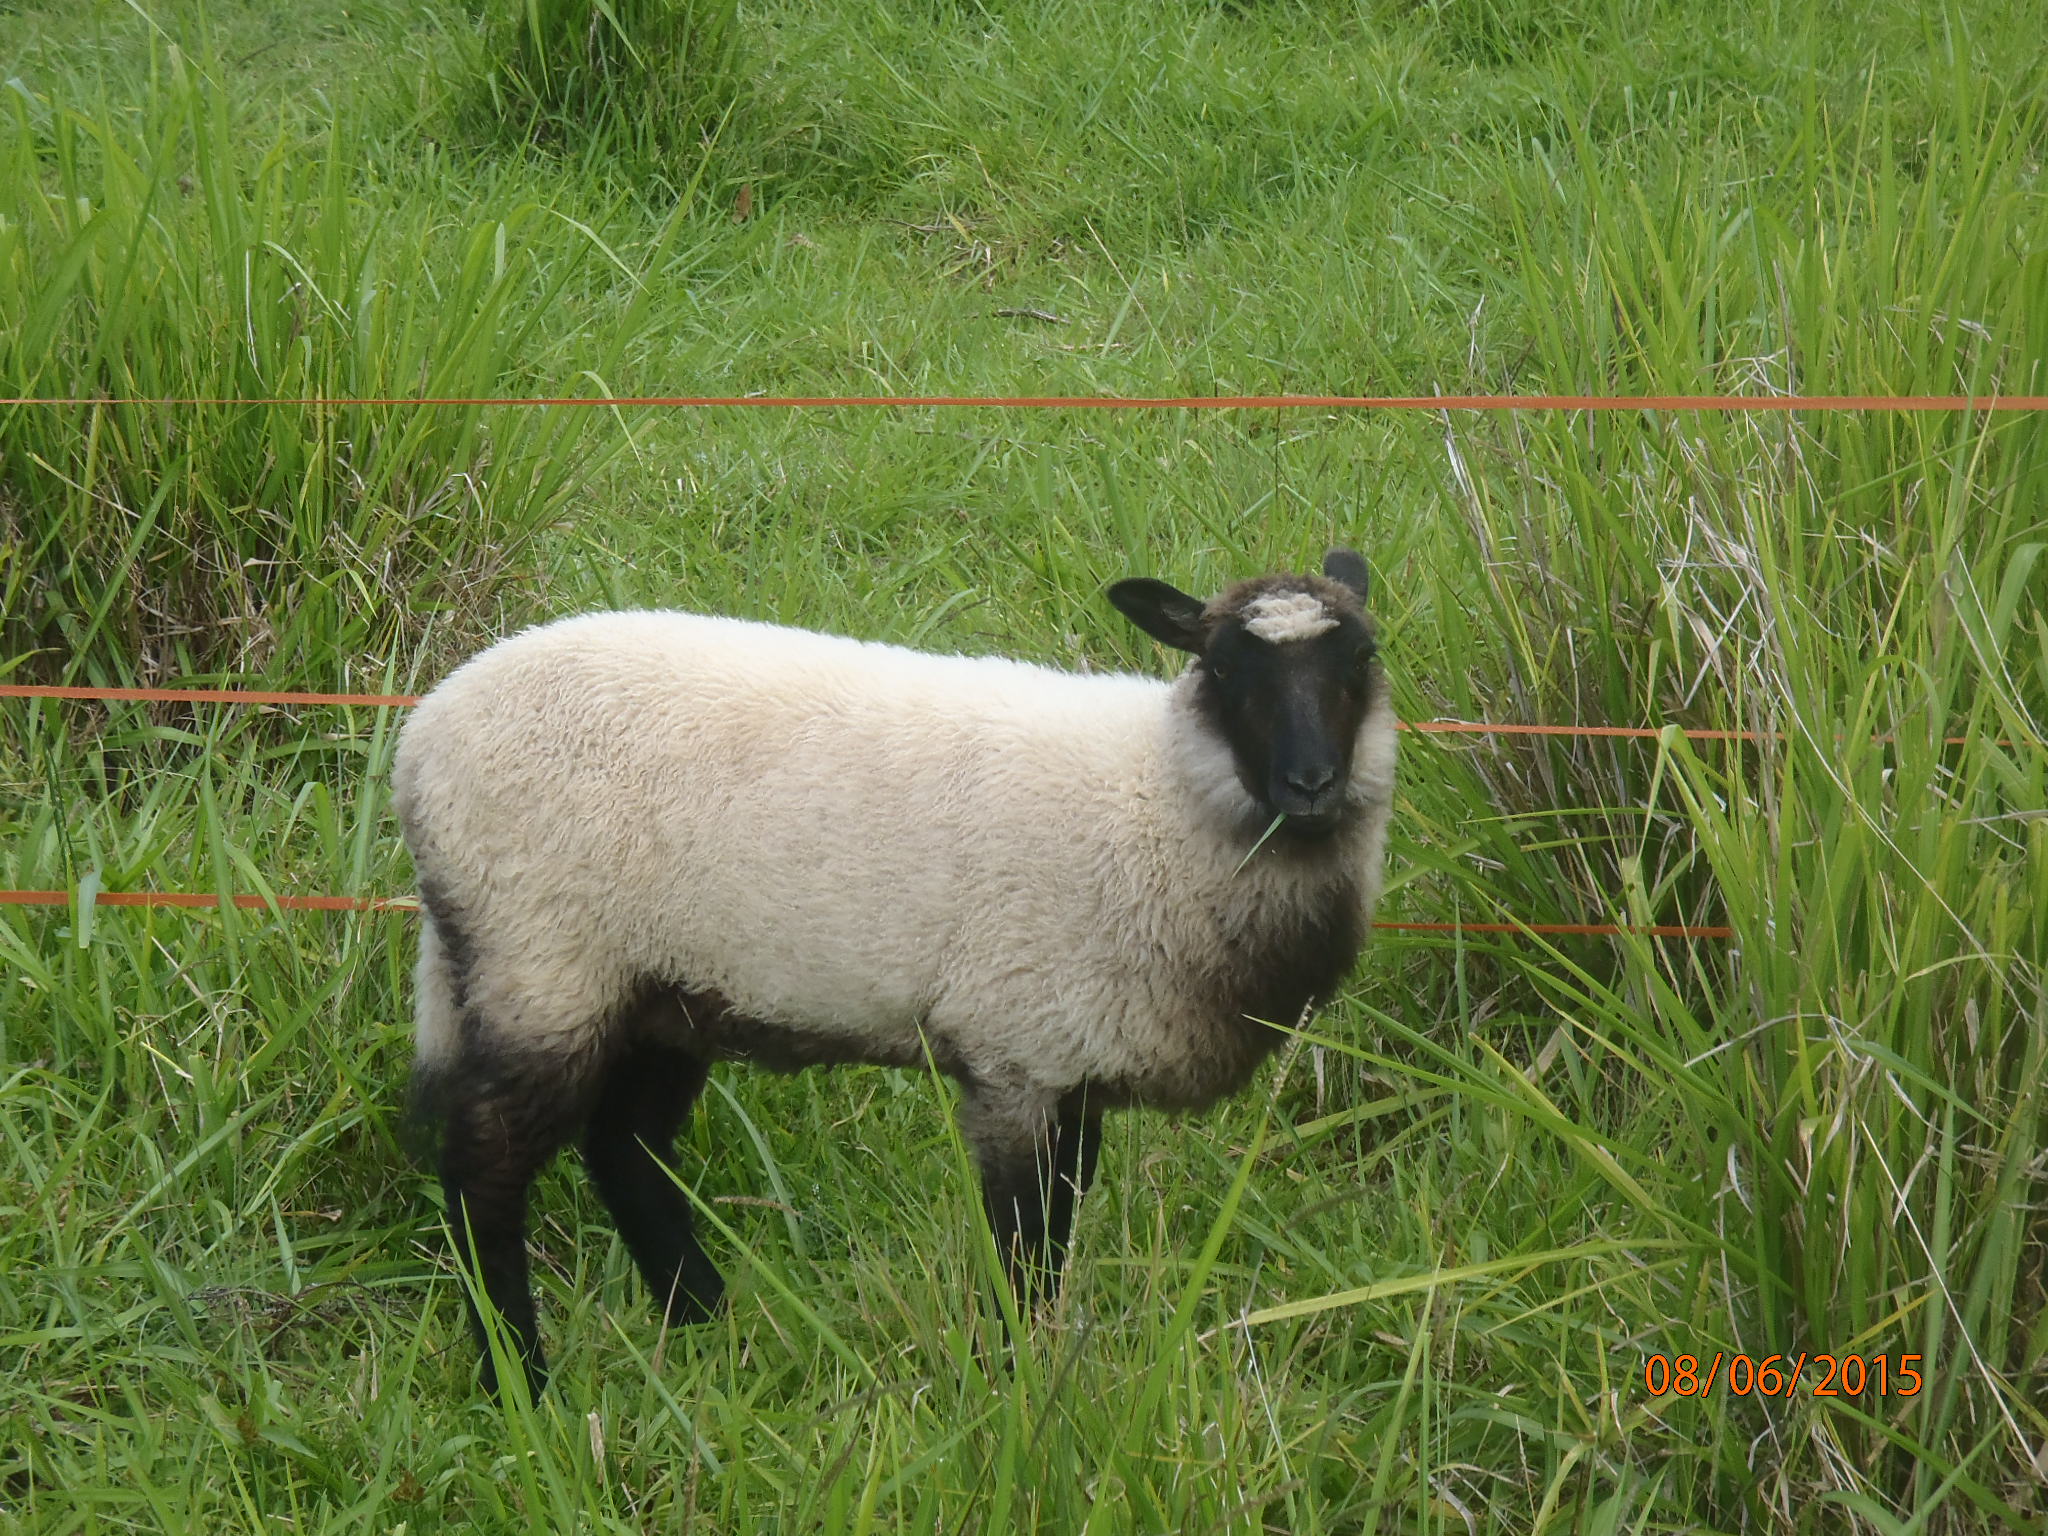 Freesia's ewe lamb